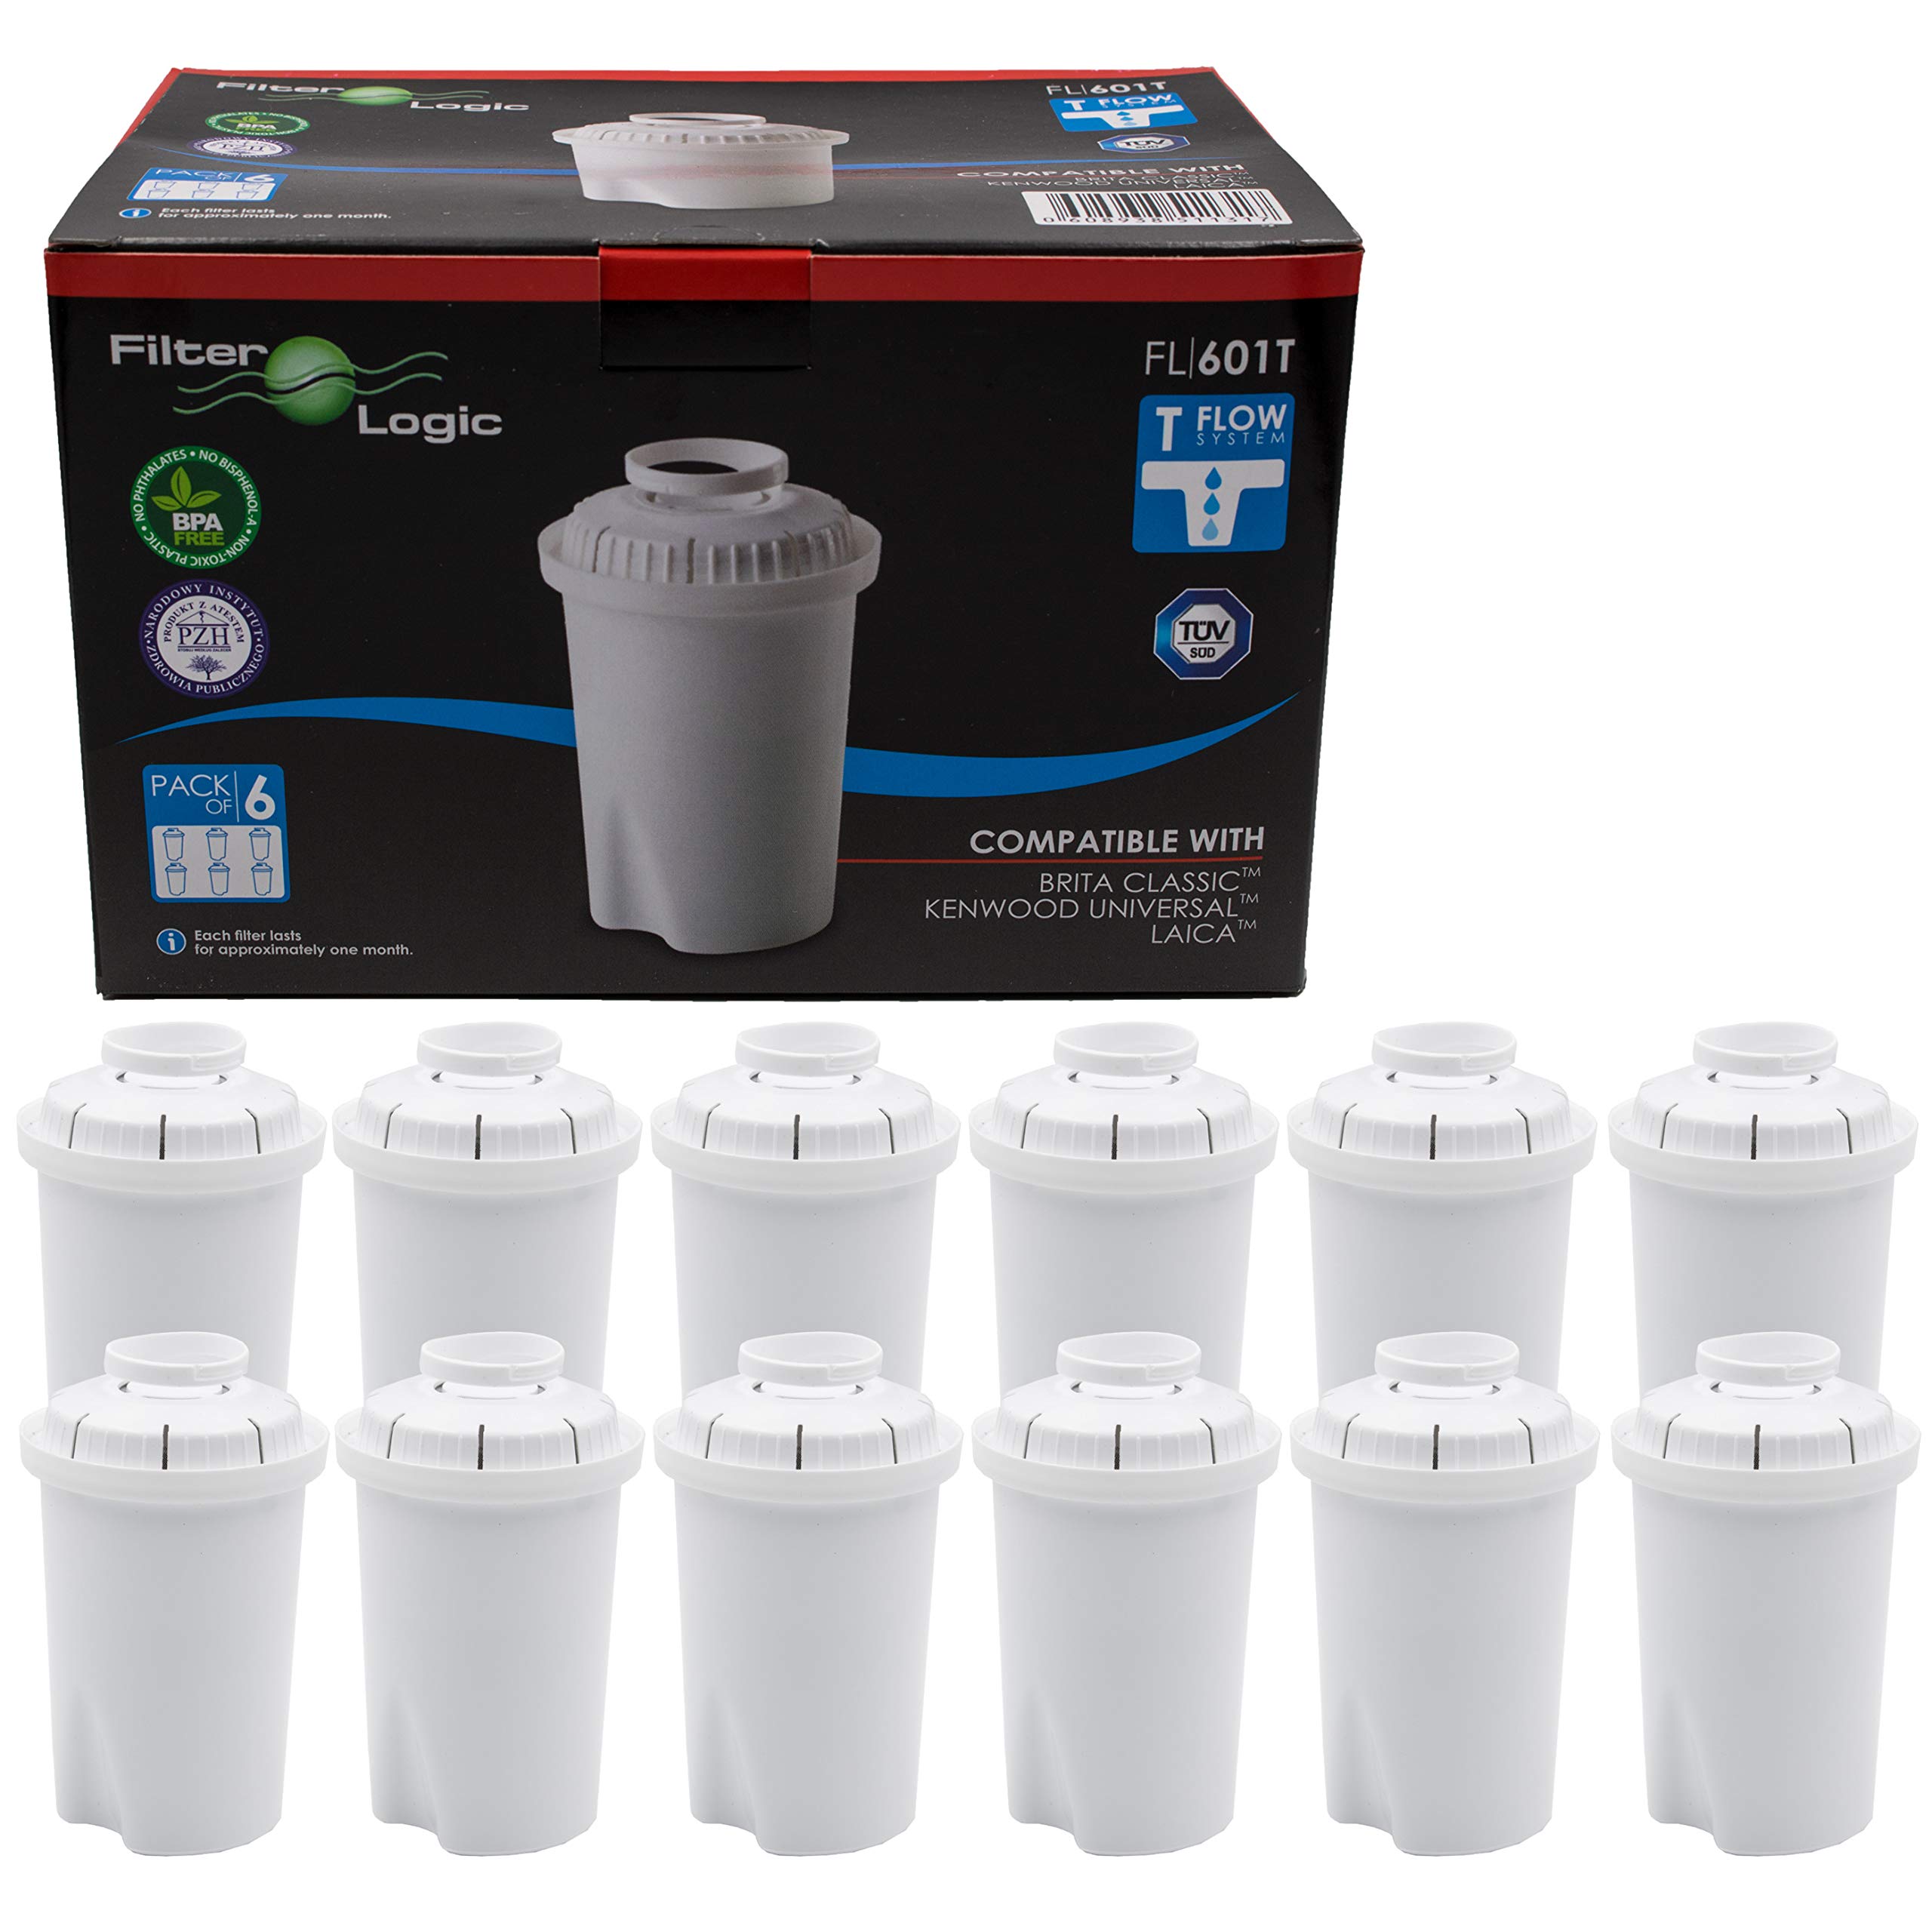 FilterLogic FL601T | 12er Pack Wasserfilterkartuschen kompatibel mit Brita Classic Wasserfilterkannen/Tischwasserfilter Wasserfilter Filterkartuschen Kartuschen